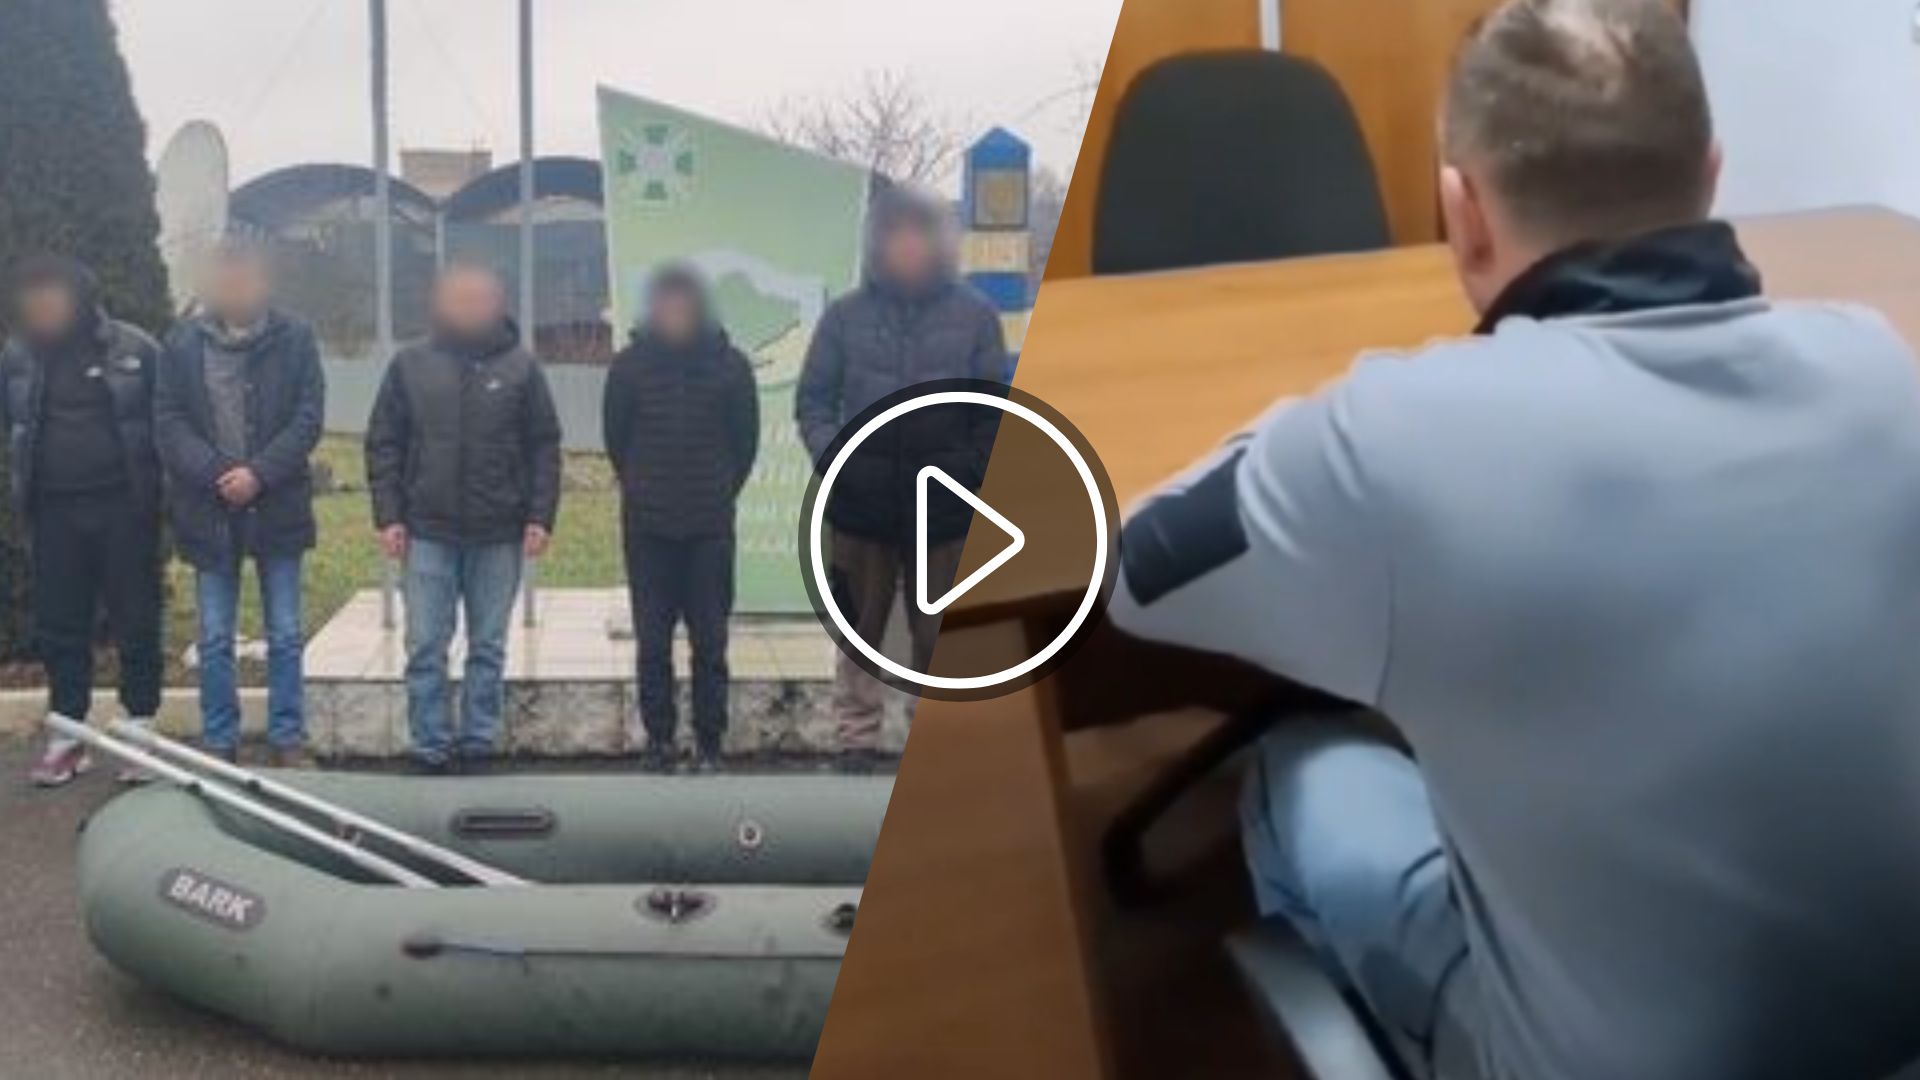 П’ятьох чоловіків з різних регіонів України затримали прикордонники відділу «Вилок» Мукачівського загону за 300 метрів до державного кордону з Угорщиною. Всі вони намагалися незаконно перетнути кордон, використовуючи гумовий човен.